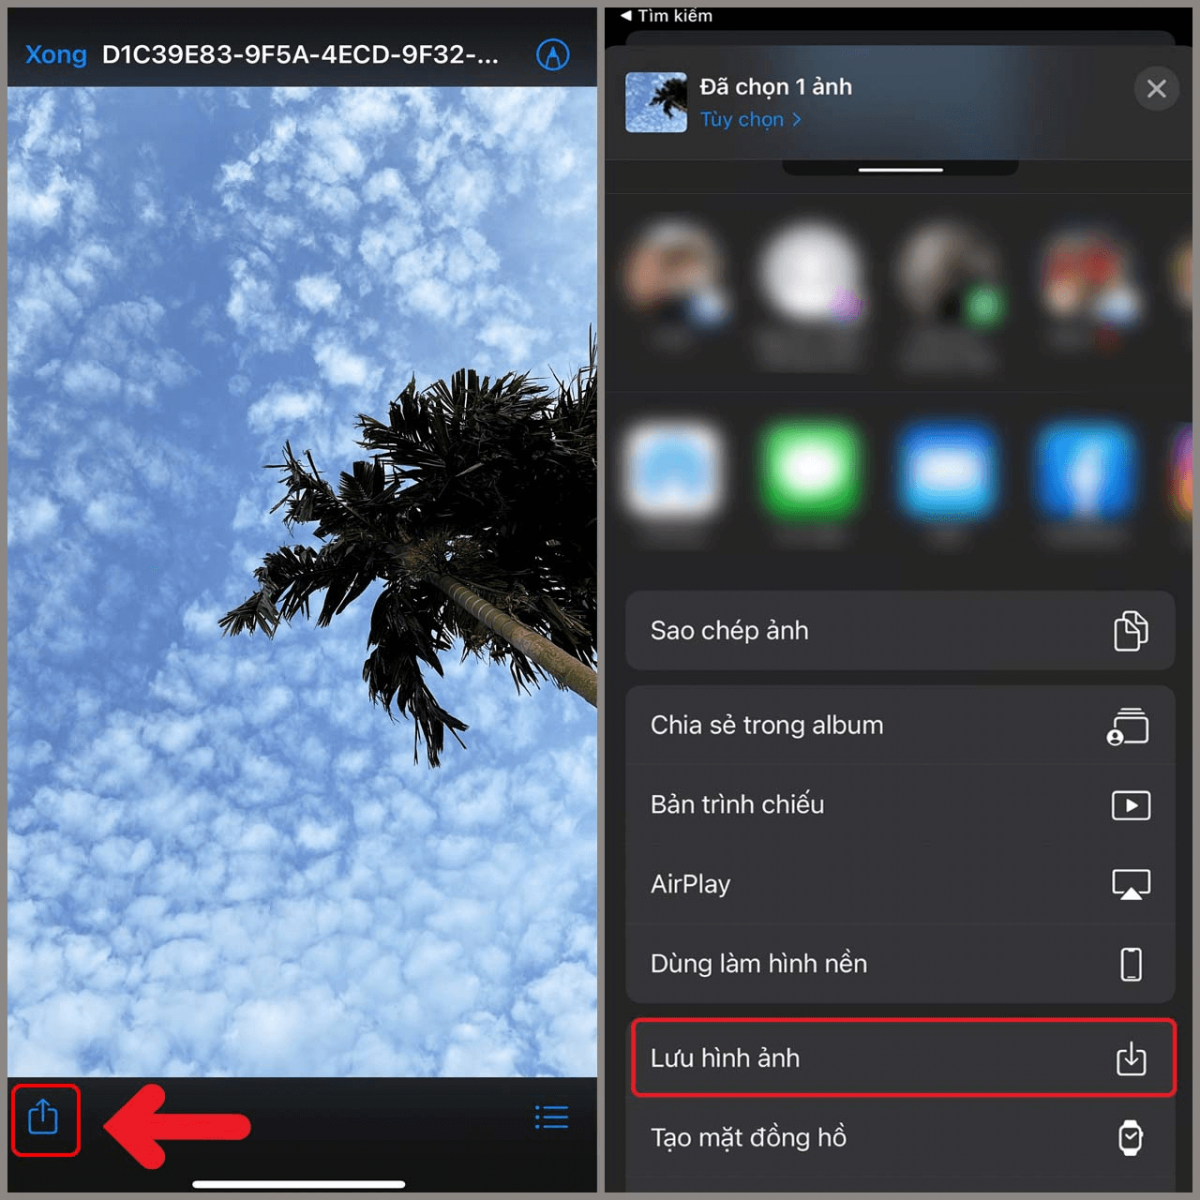 Nhấn nhập nút “Chia sẻ” ở góc cạnh trái ngược bên dưới screen và lựa chọn “Lưu hình ảnh” nhằm vận chuyển hình ảnh kể từ iCloud về iPhone mới mẻ.